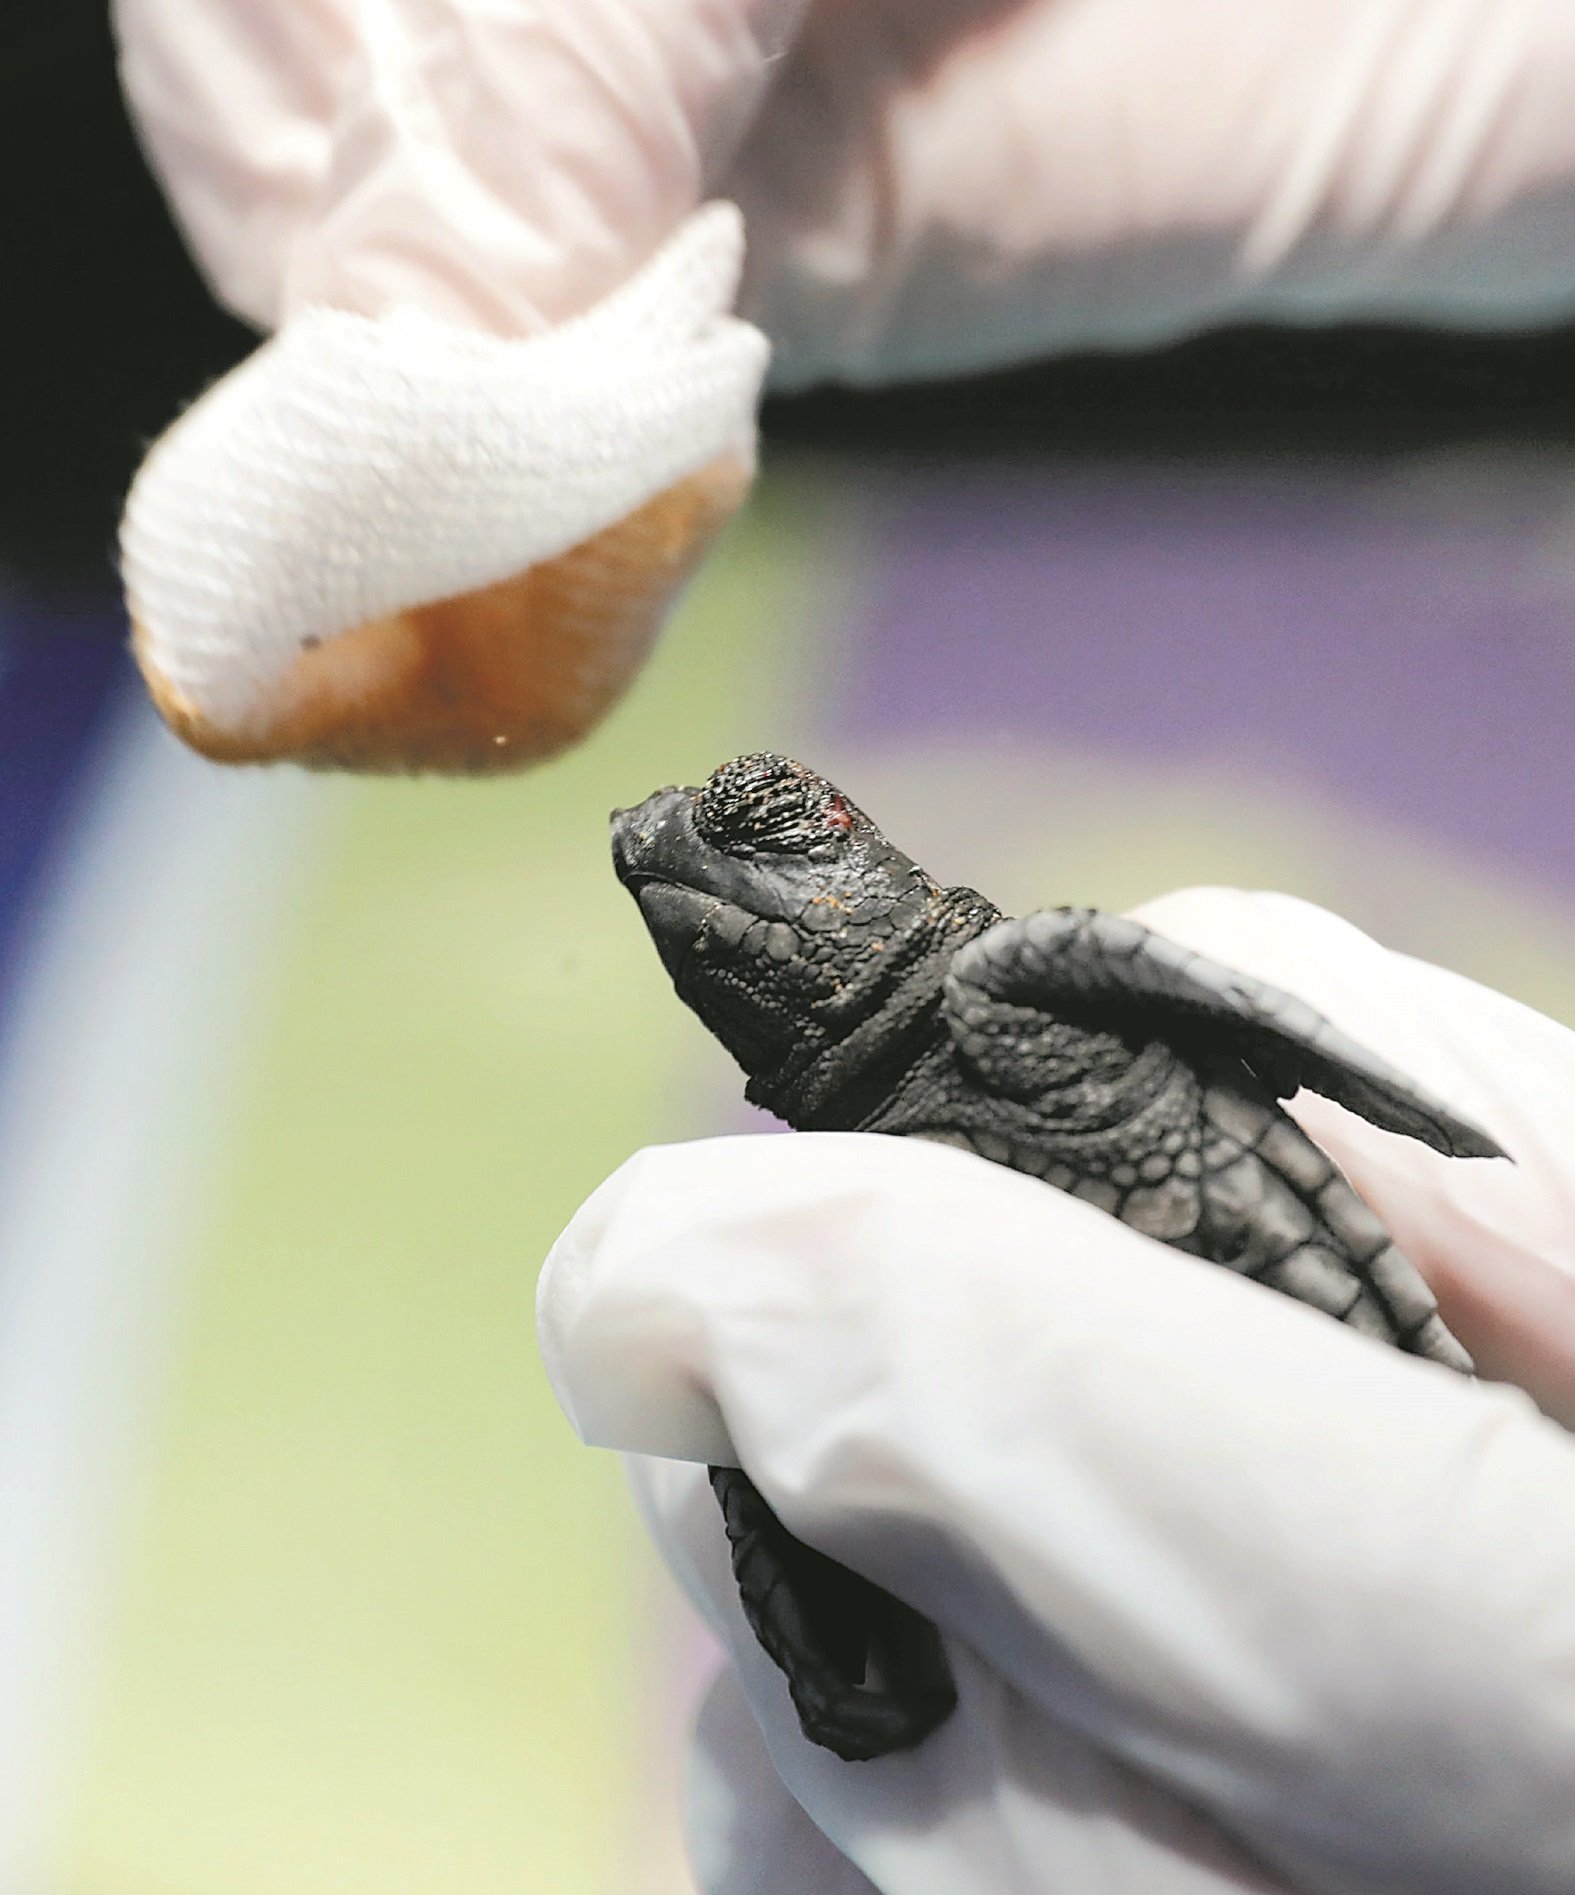 卡斯卡教授小心翼翼地为一只海龟宝宝清理伤口。这些经过8至9周孵化的小海龟，在放归大海时常遇上不少天敌，包括遭海鸟及海洋生物攻击、吞噬。